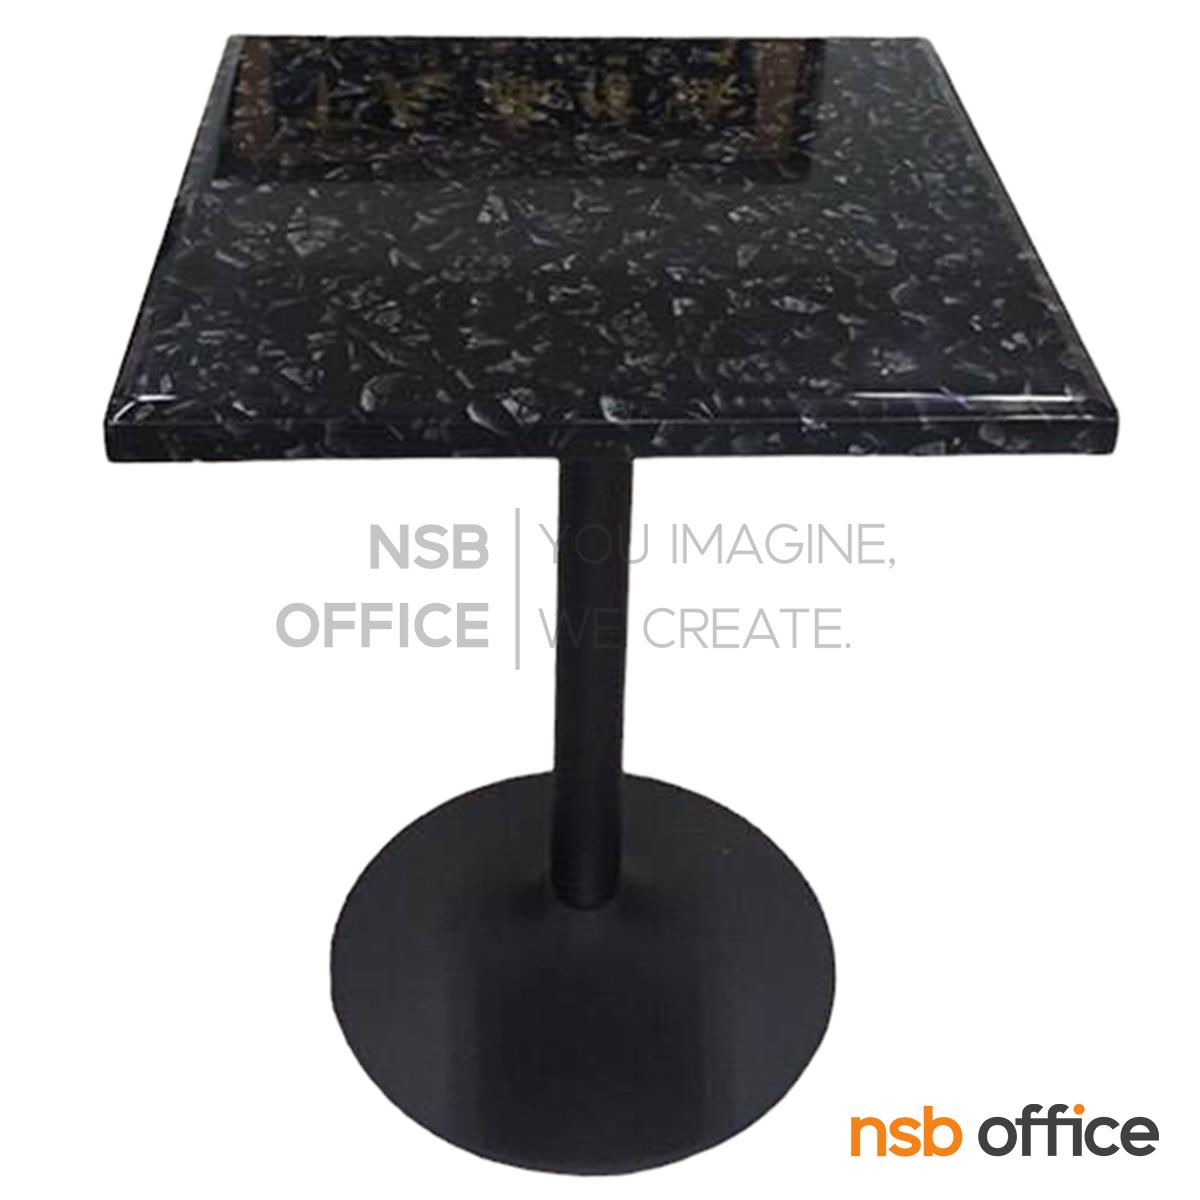 โต๊ะหน้าหินอ่อน รุ่น Beckinsale (เบ็กคินเซล) ขนาด 60W cm.  โครงเหล็กเคลือบสีดำ